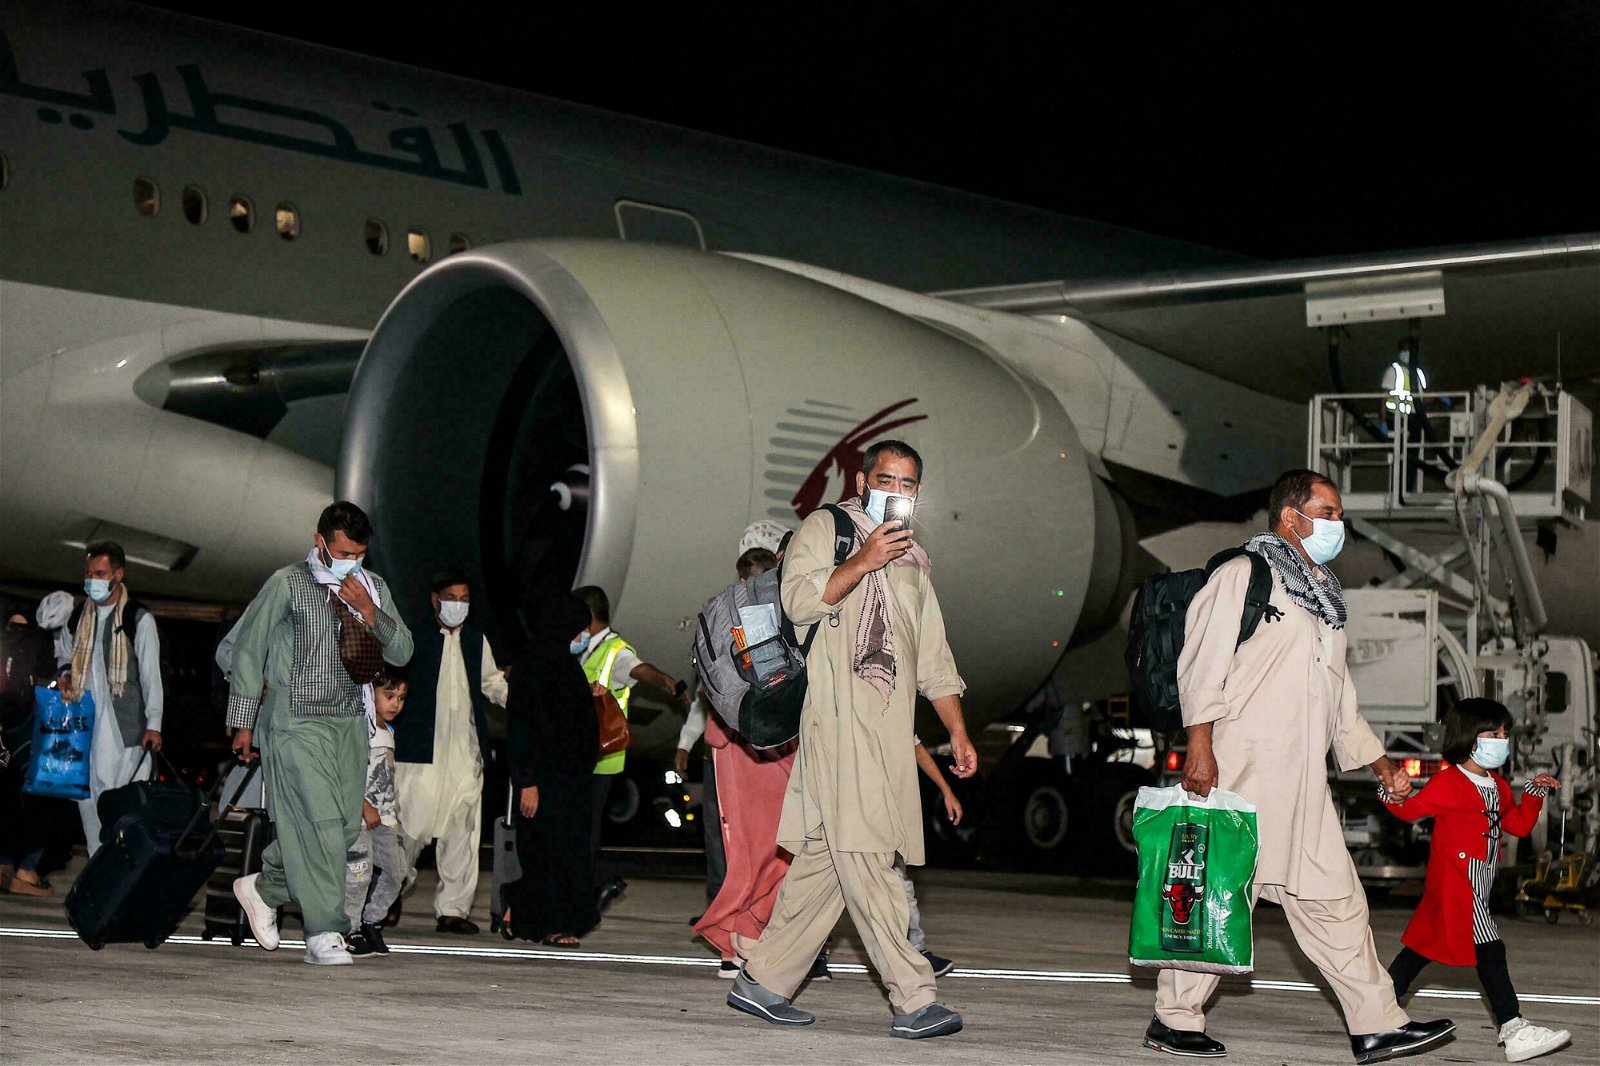 该航班的乘客预计将由杜哈的一处难民营接收。（图取自法新社）